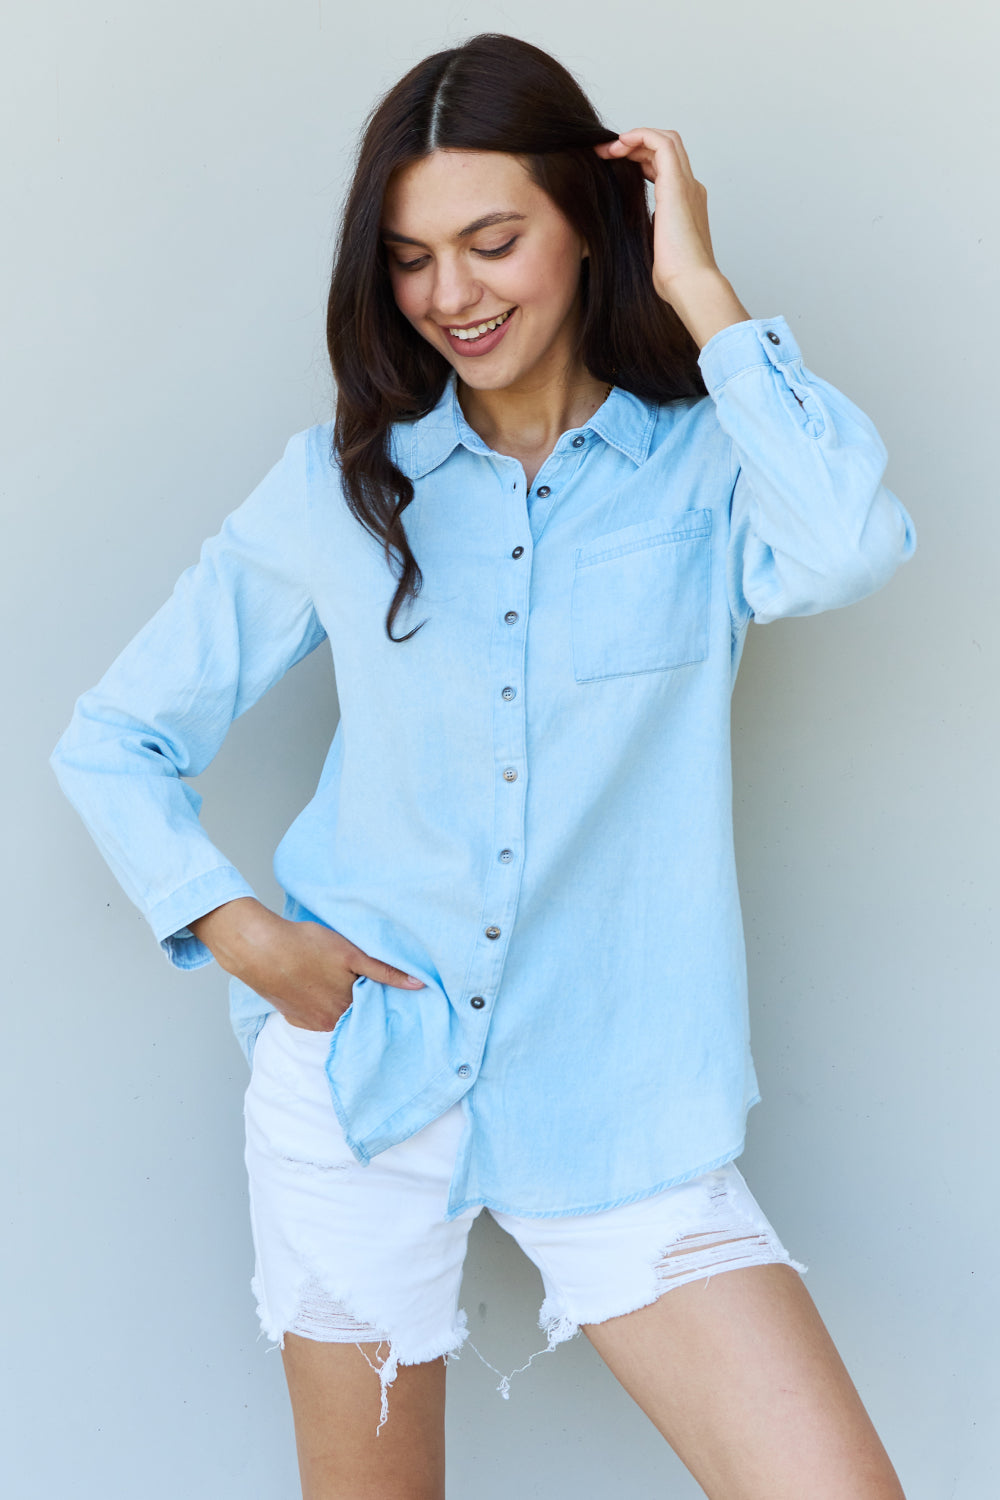 Hazel Blues® |  Doublju Blue Jean Baby Denim Button Down Shirt Top in Light Blue